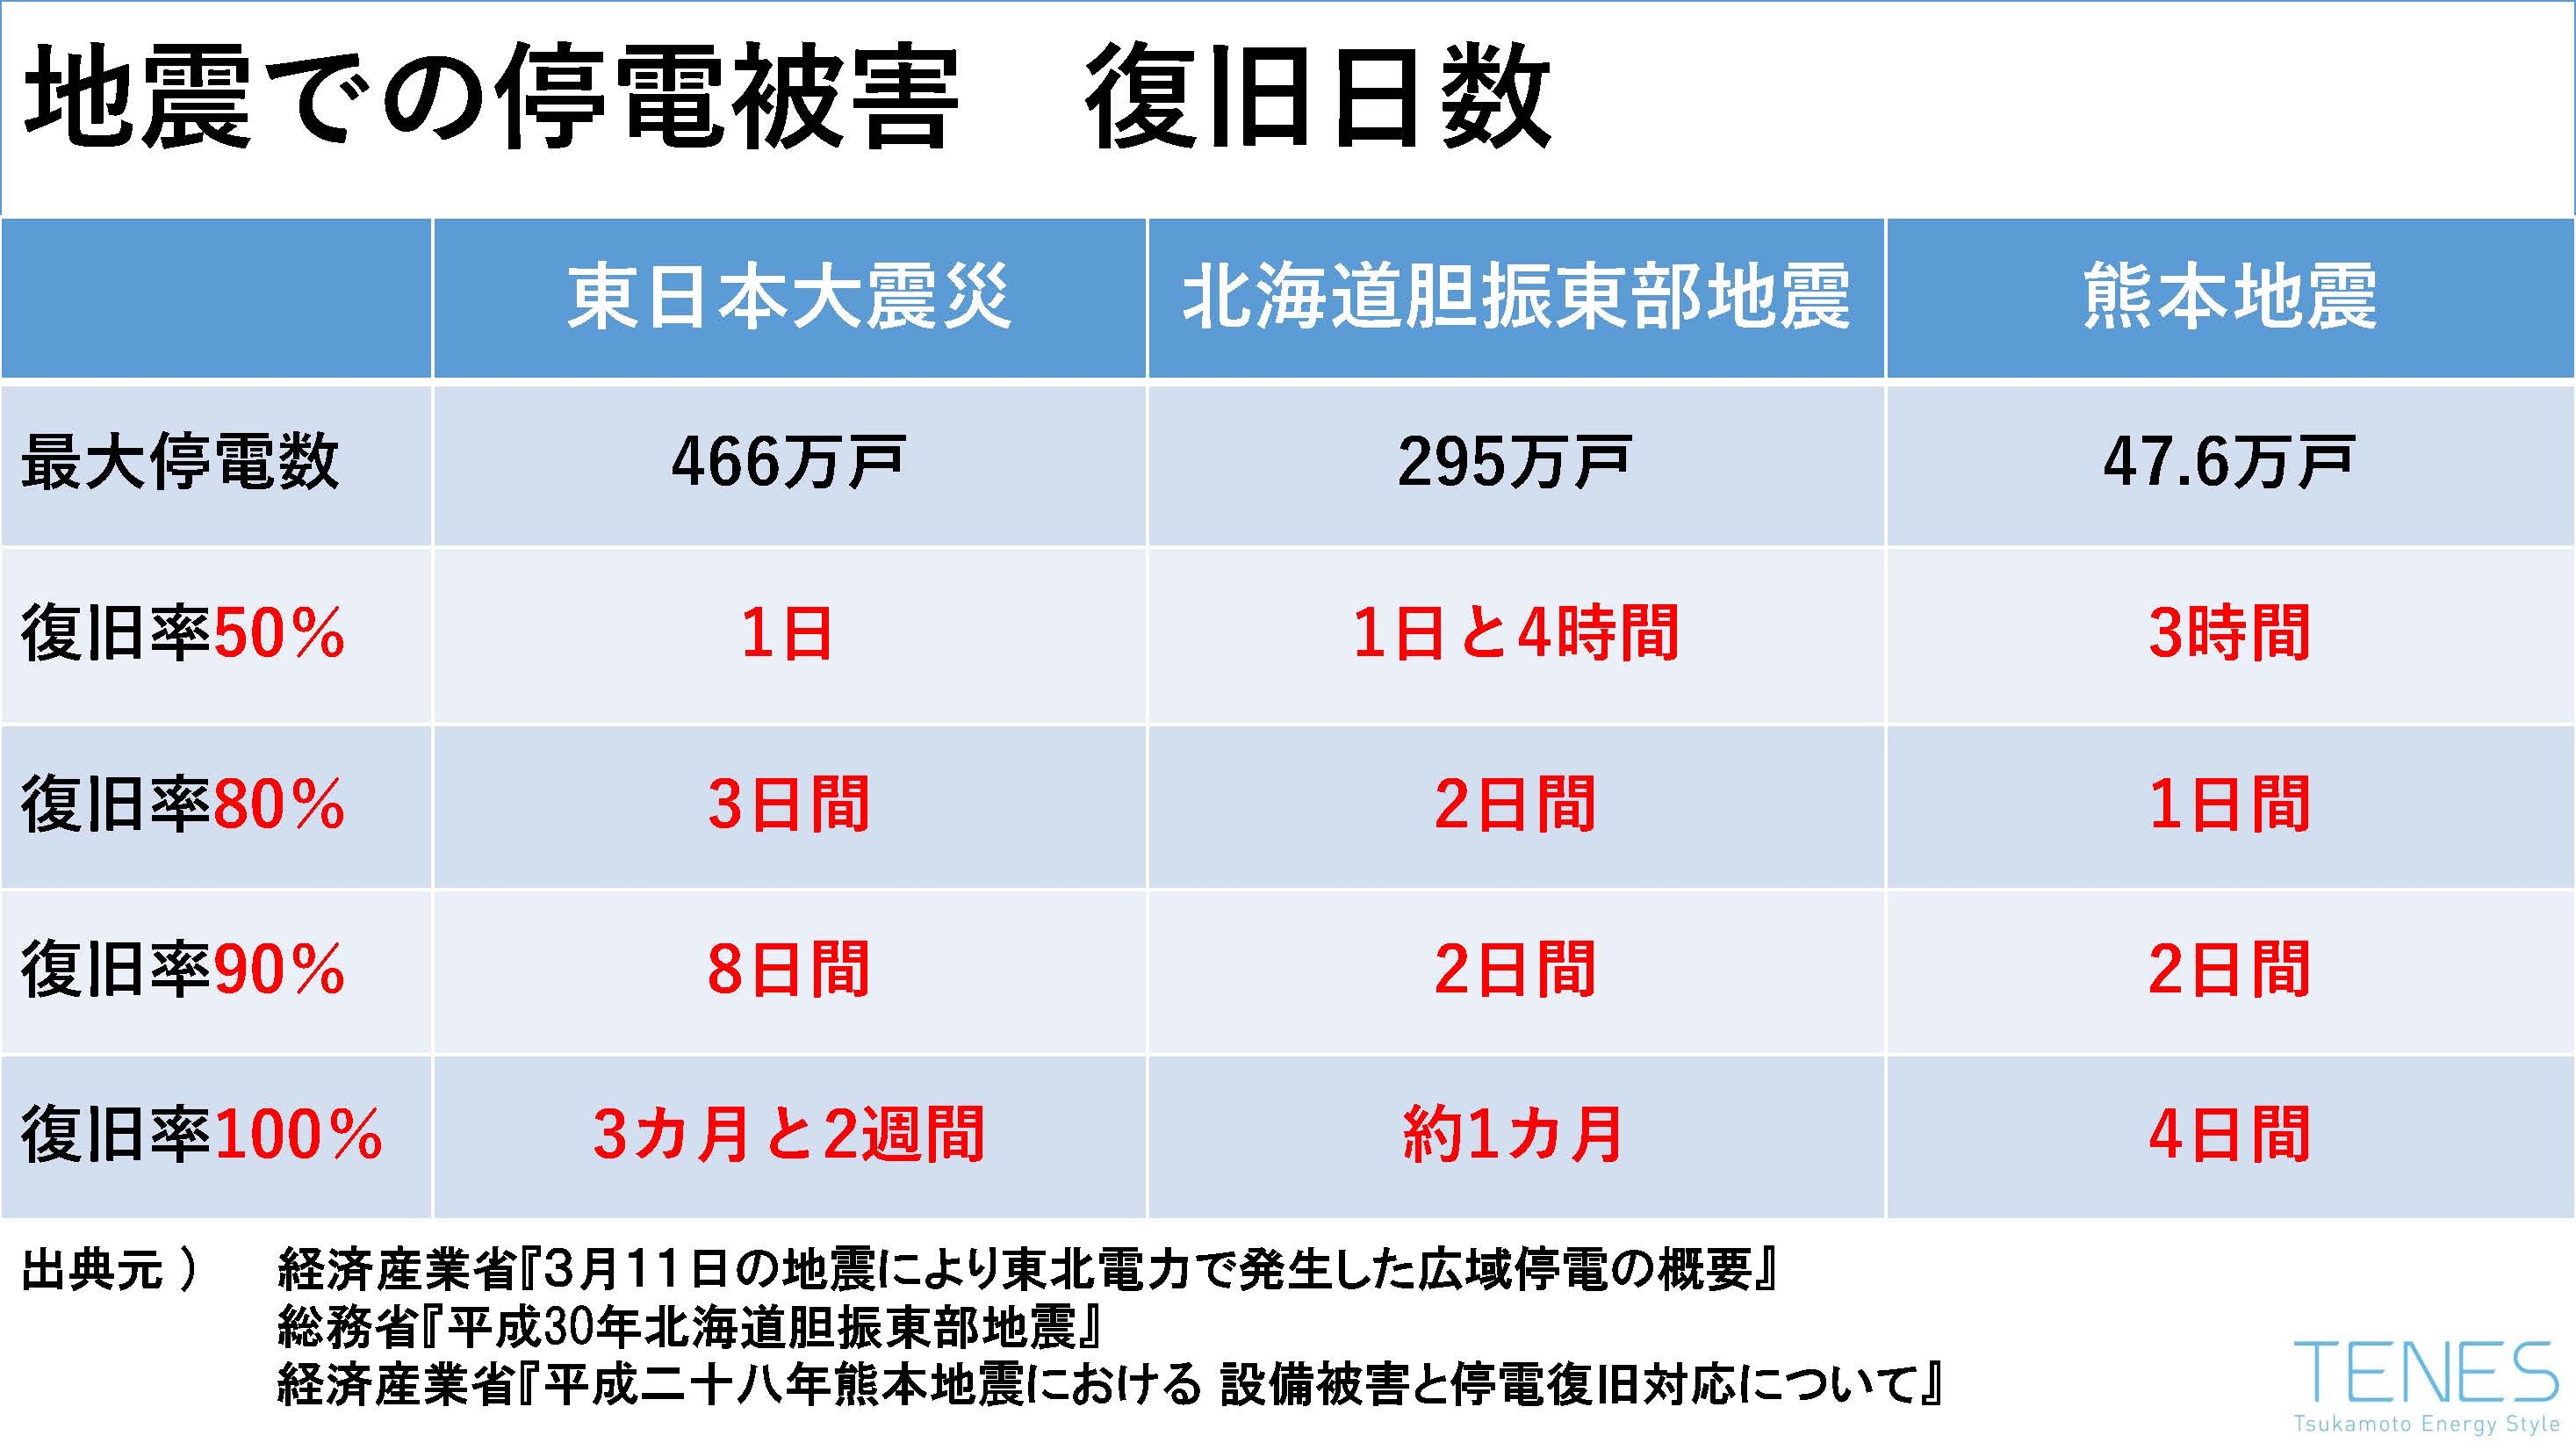 東日本大震災、北海道胆振東部地震、熊本地震の停電被害による復旧までの日数